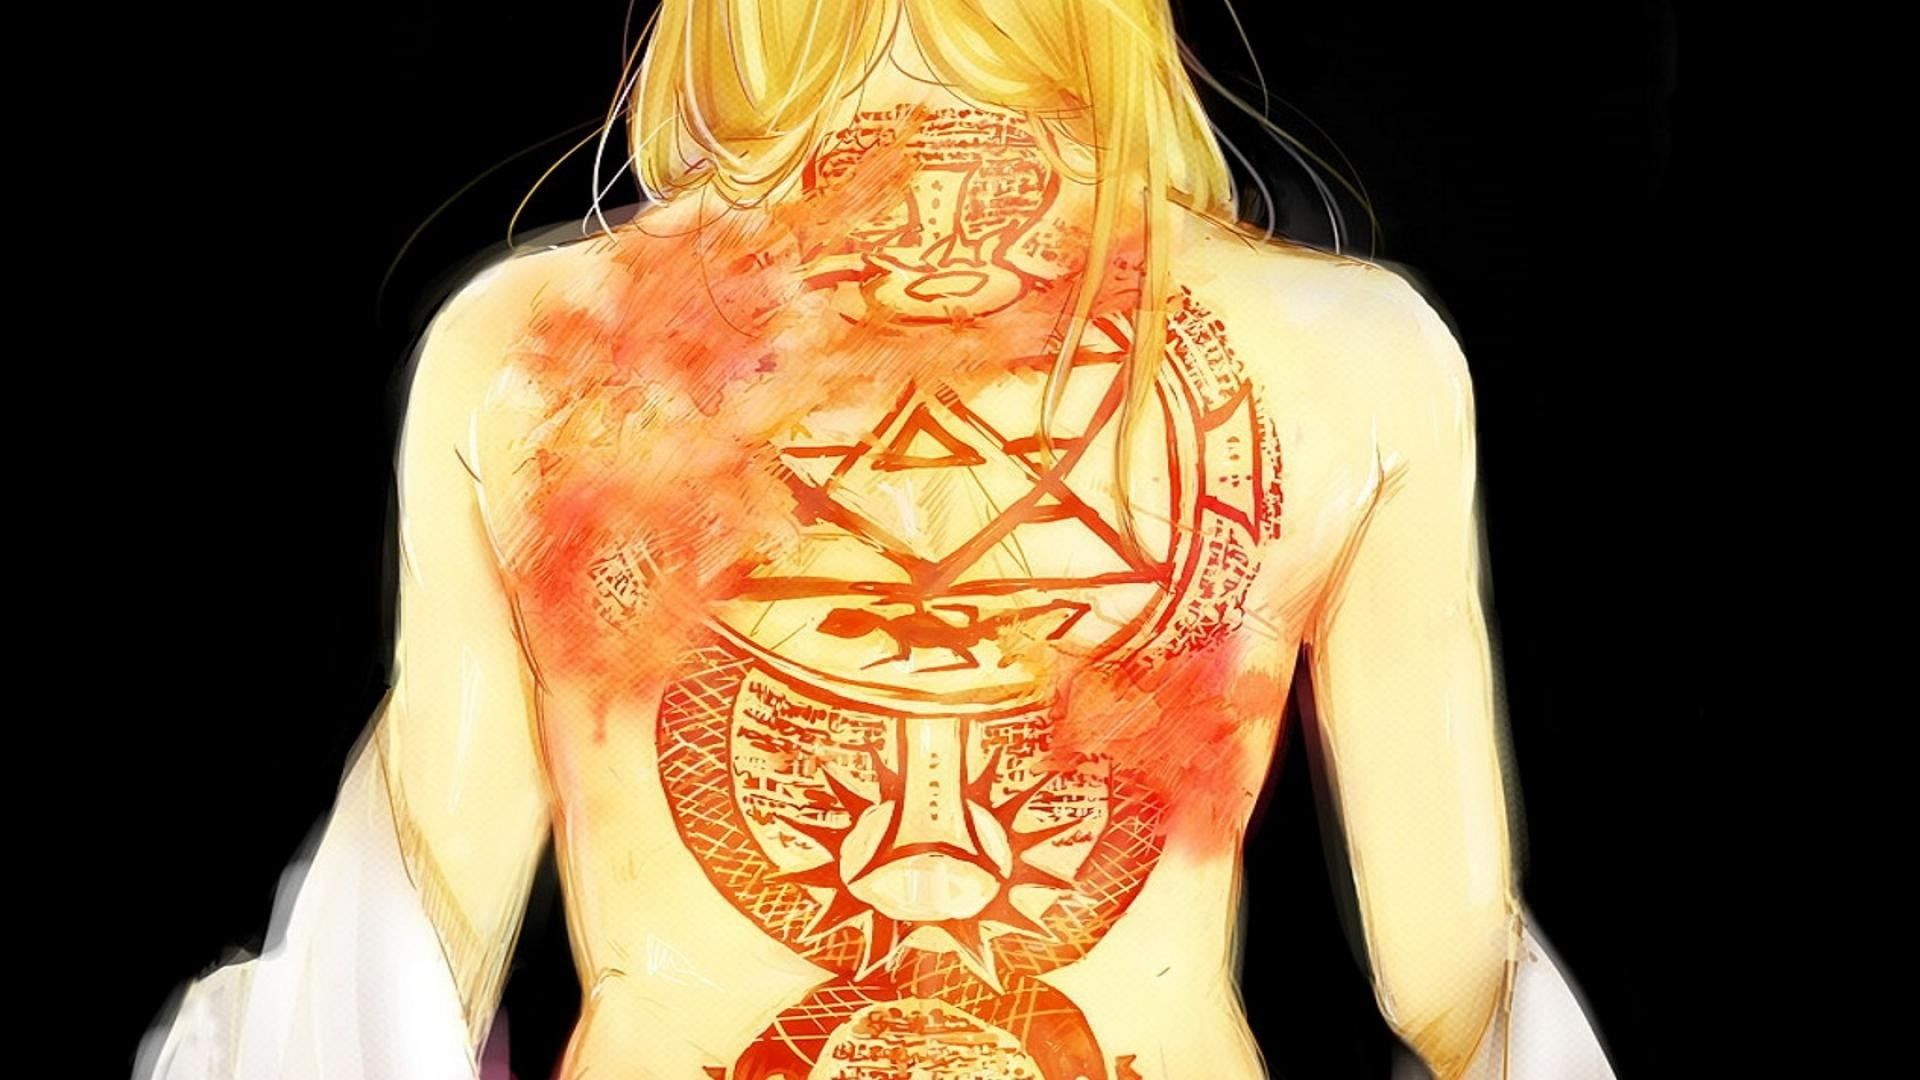 Red back tattoo, Full Metal Alchemist Brotherhood, Riza Hawkeye